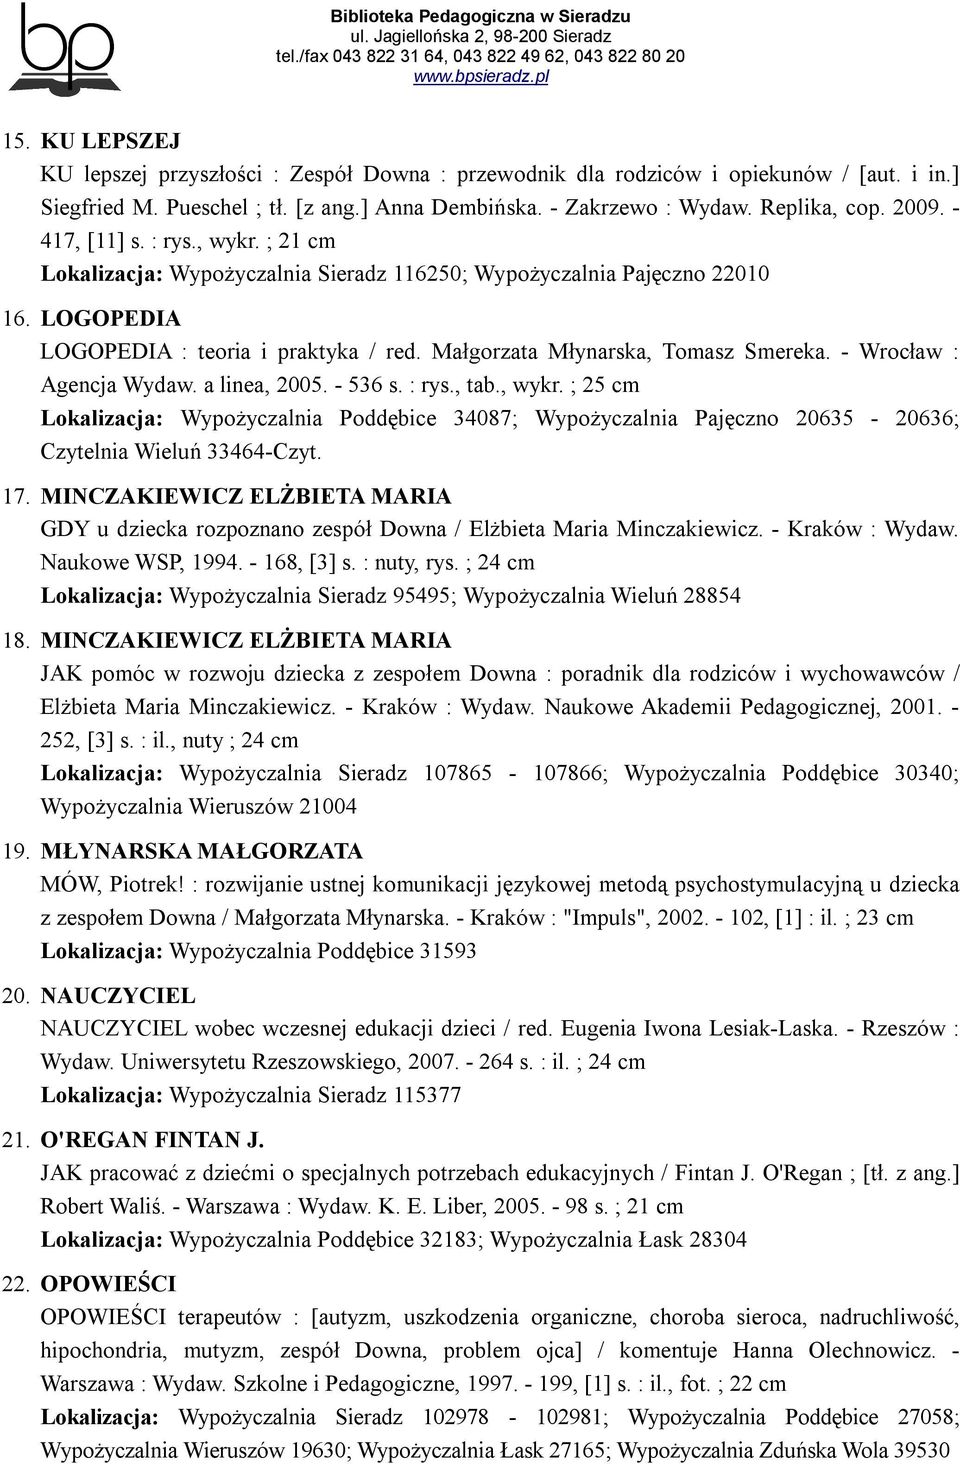 - Wrocław : Agencja Wydaw. a linea, 2005. - 536 s. : rys., tab., wykr. ; 25 cm Lokalizacja: Wypożyczalnia Poddębice 34087; Wypożyczalnia Pajęczno 20635-20636; Czytelnia Wieluń 33464-Czyt. 17.